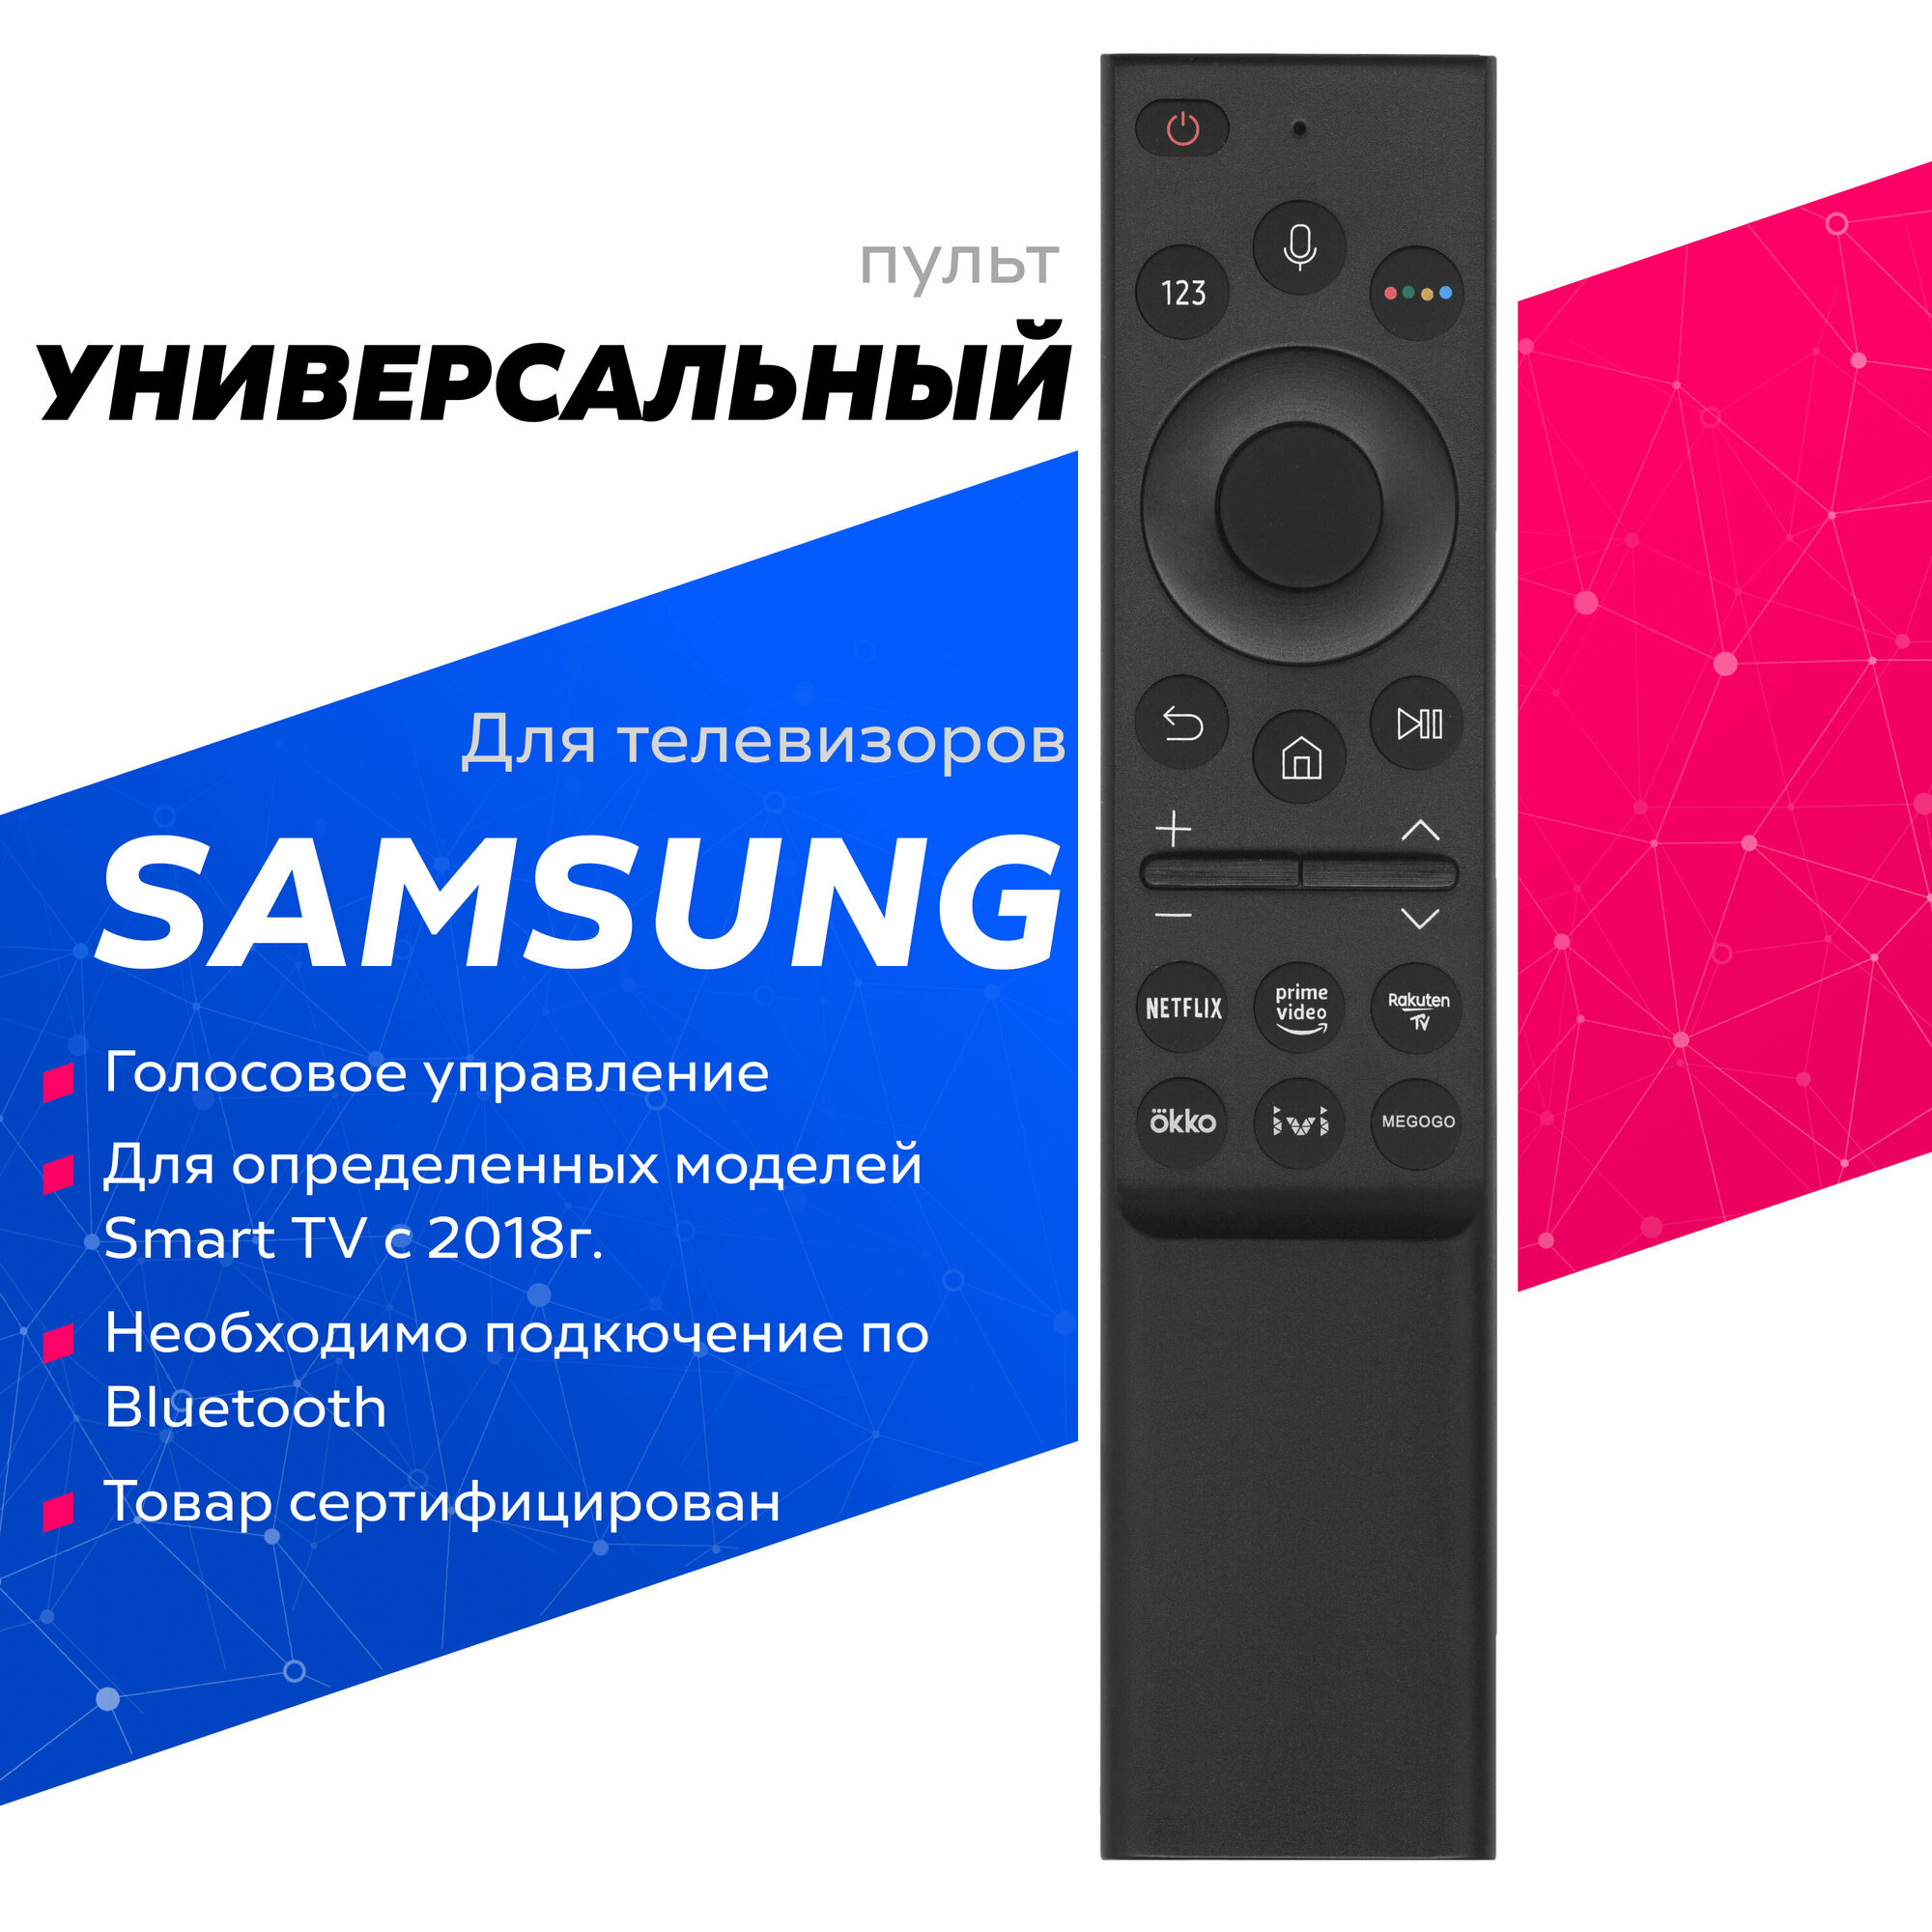 Универсальный пульт для телевизоров Samsung Smart TV